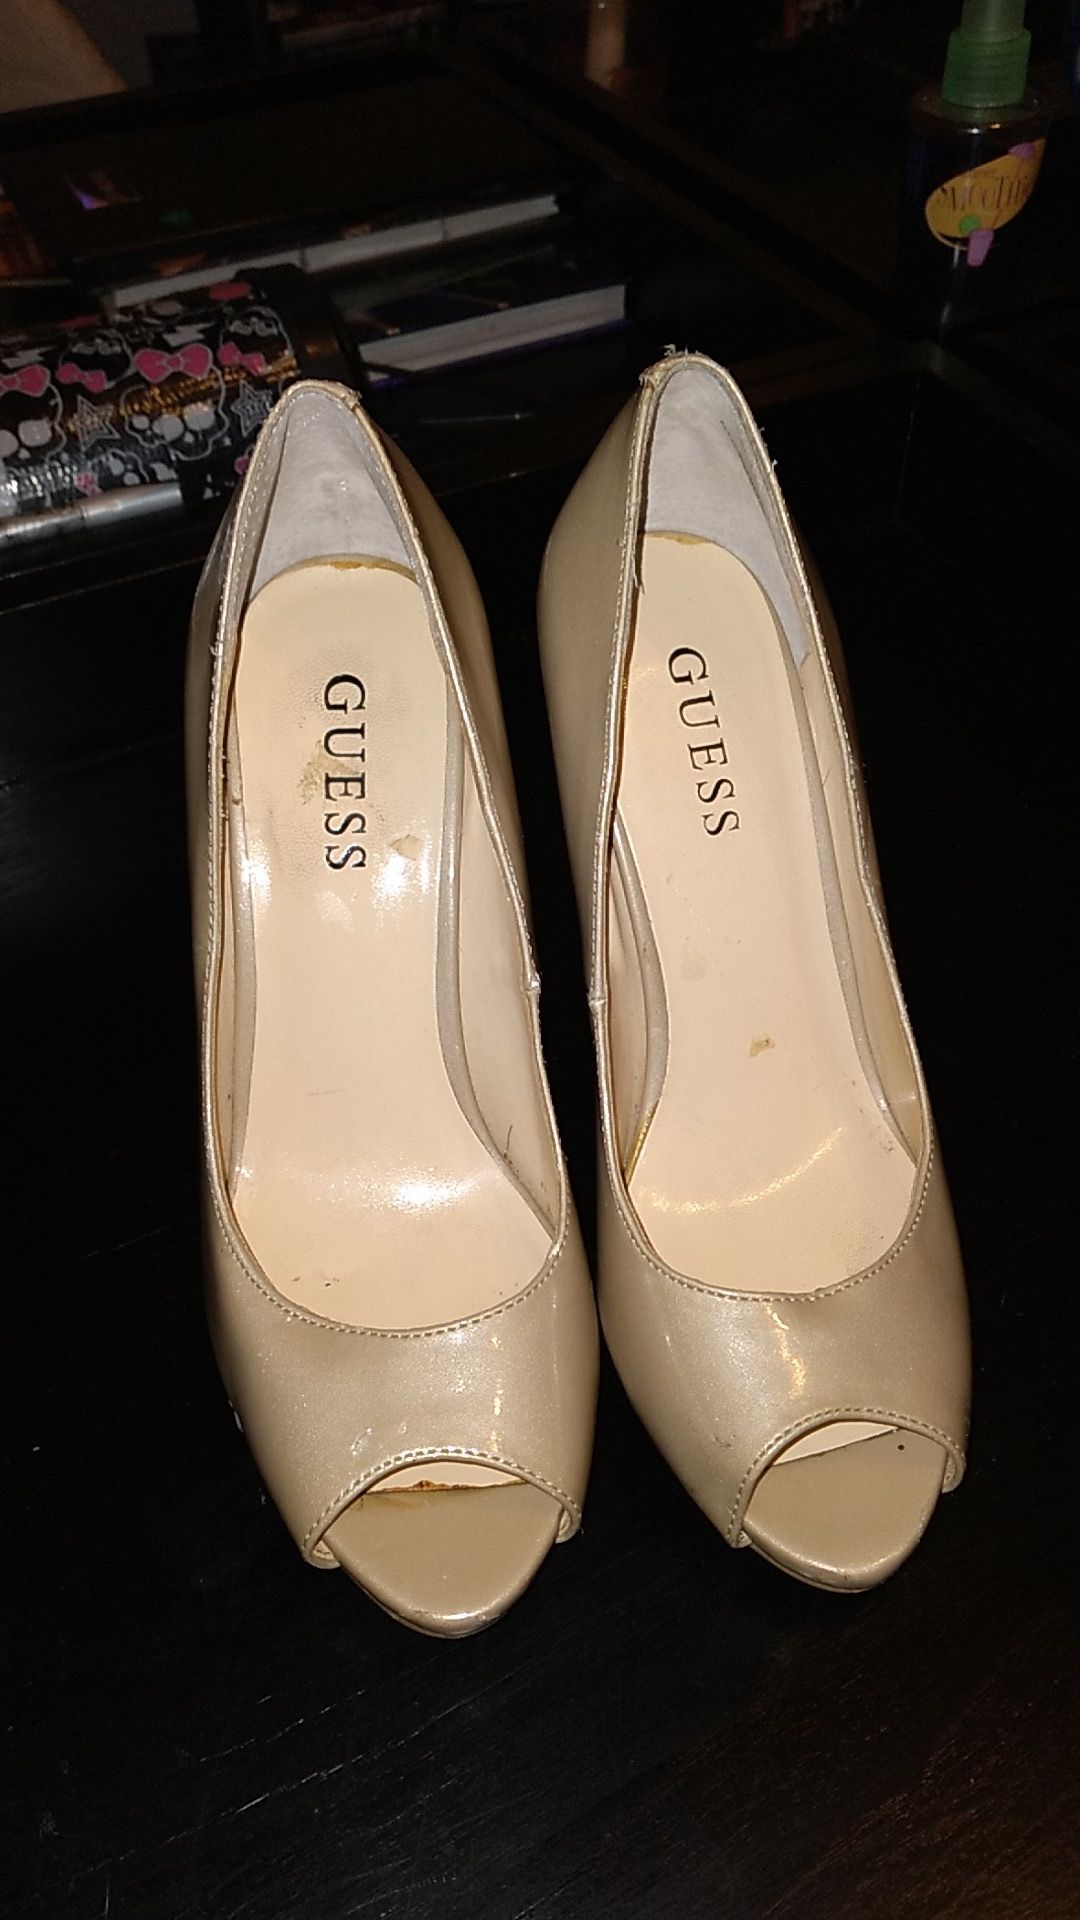 Tan Guess heels